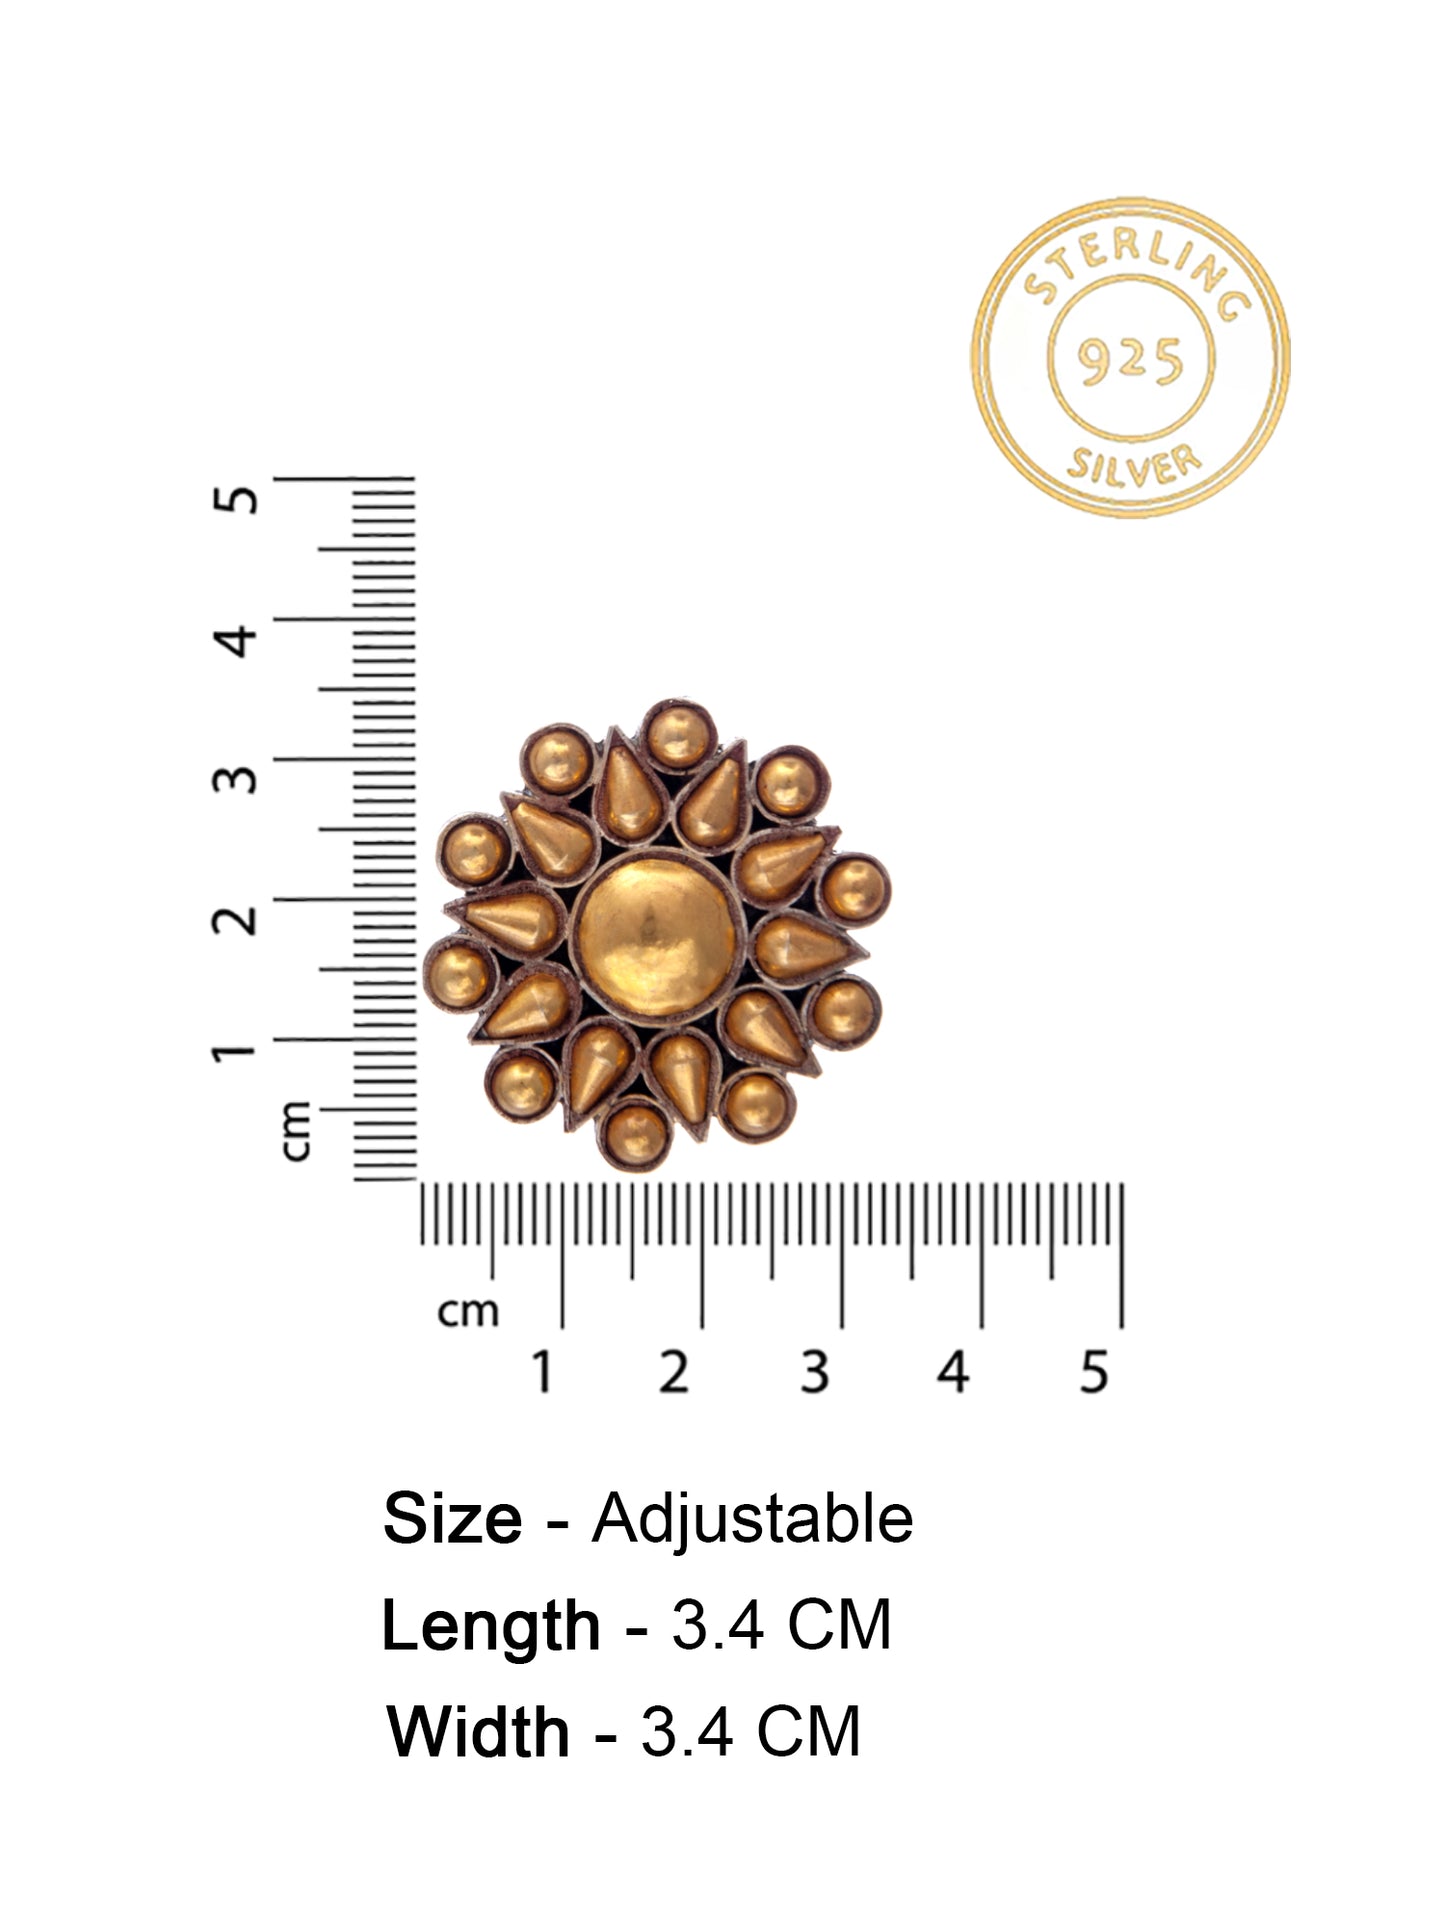 Svarnam Floral Gold Adjustable Ring